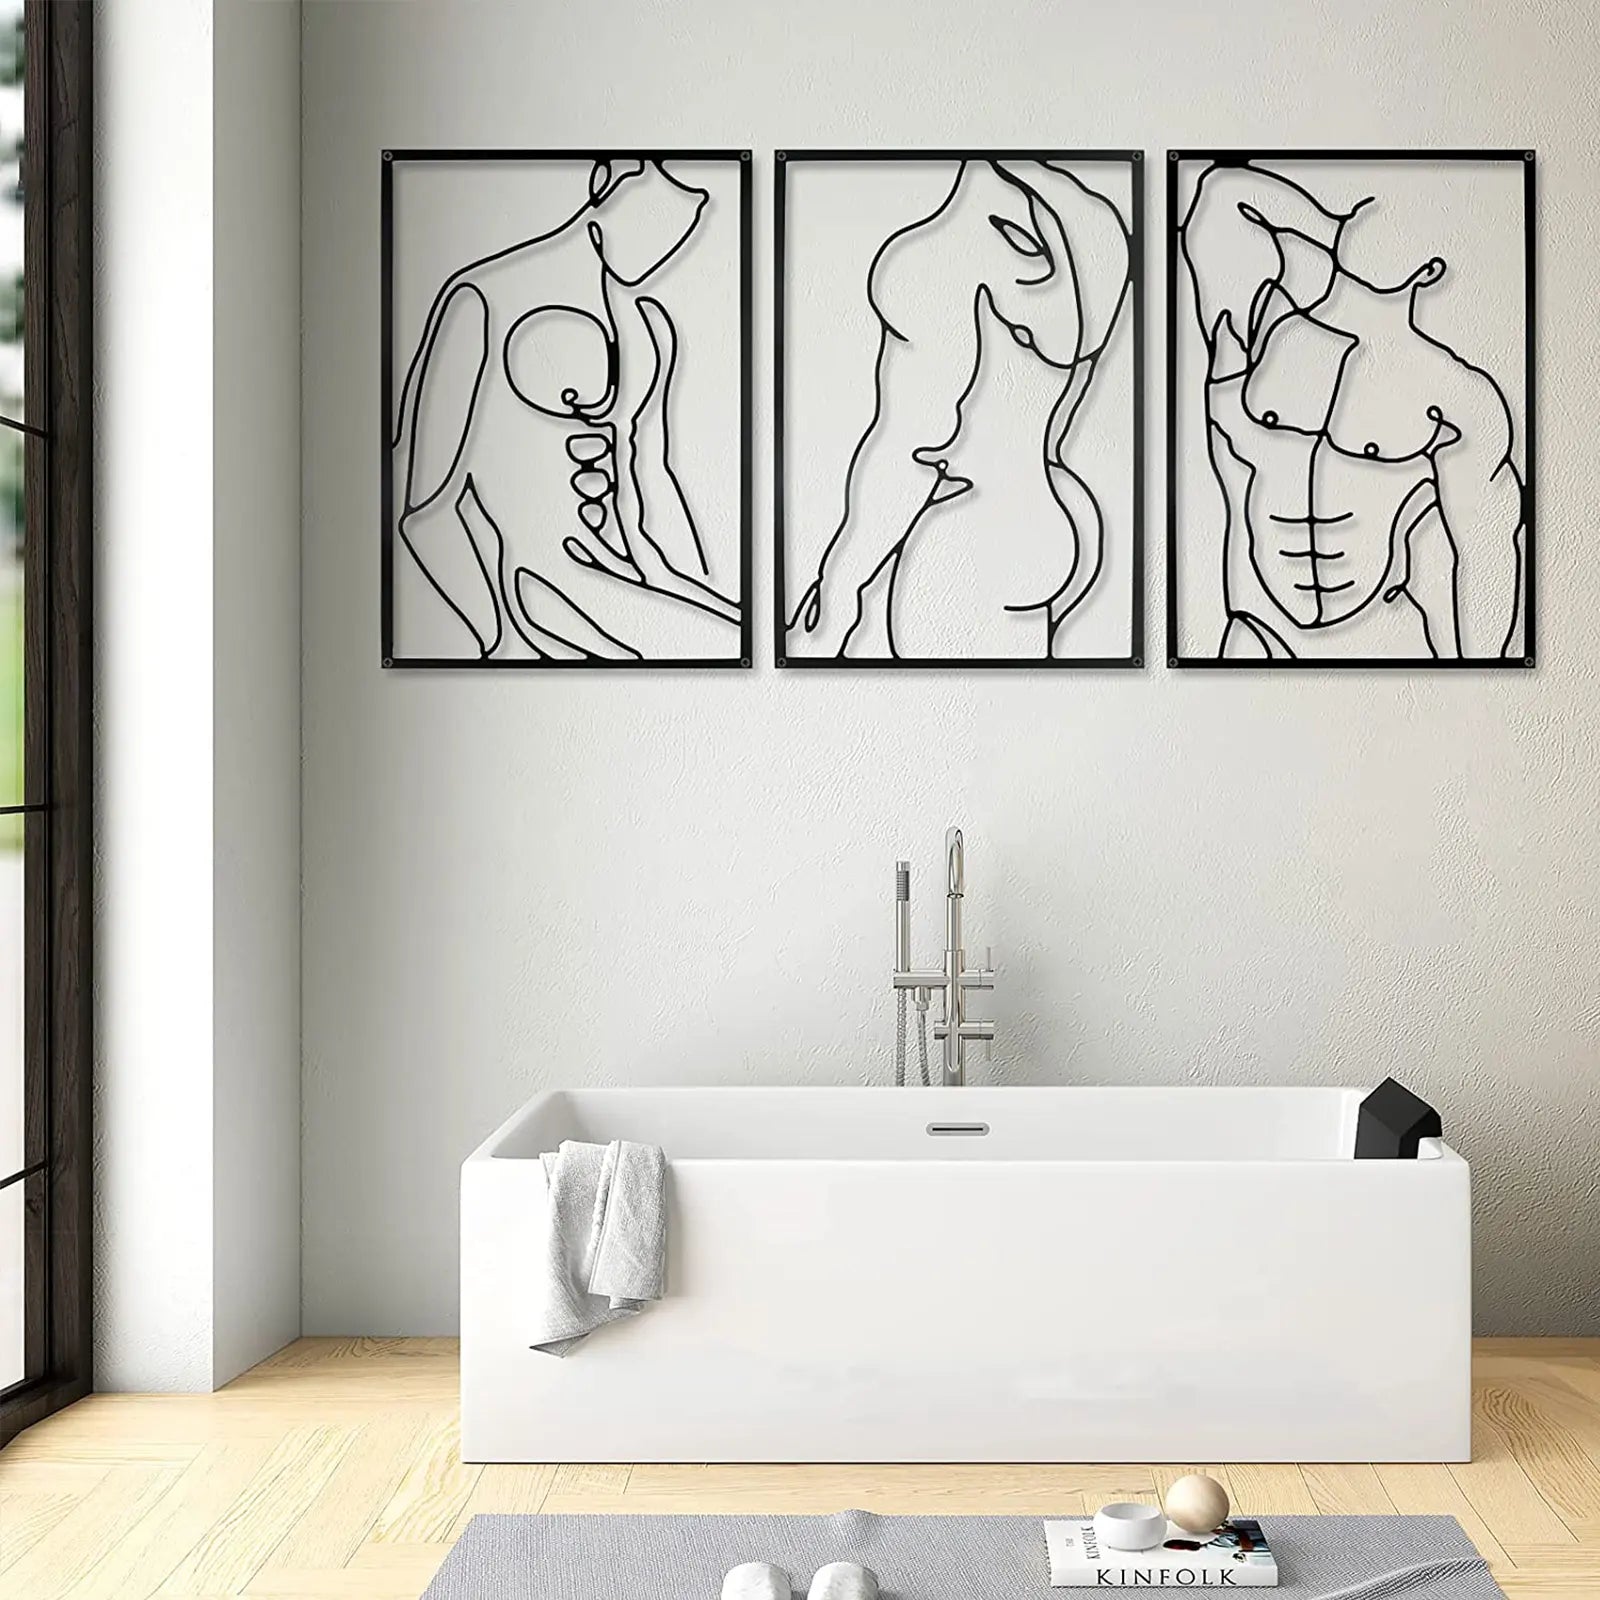 Juego de 3 decoración de pared de metal – Esculturas para colgar en la pared con forma de línea abstracta minimalista moderna más gruesa – Arte de pared de metal negro para dormitorio, sala de estar y baño